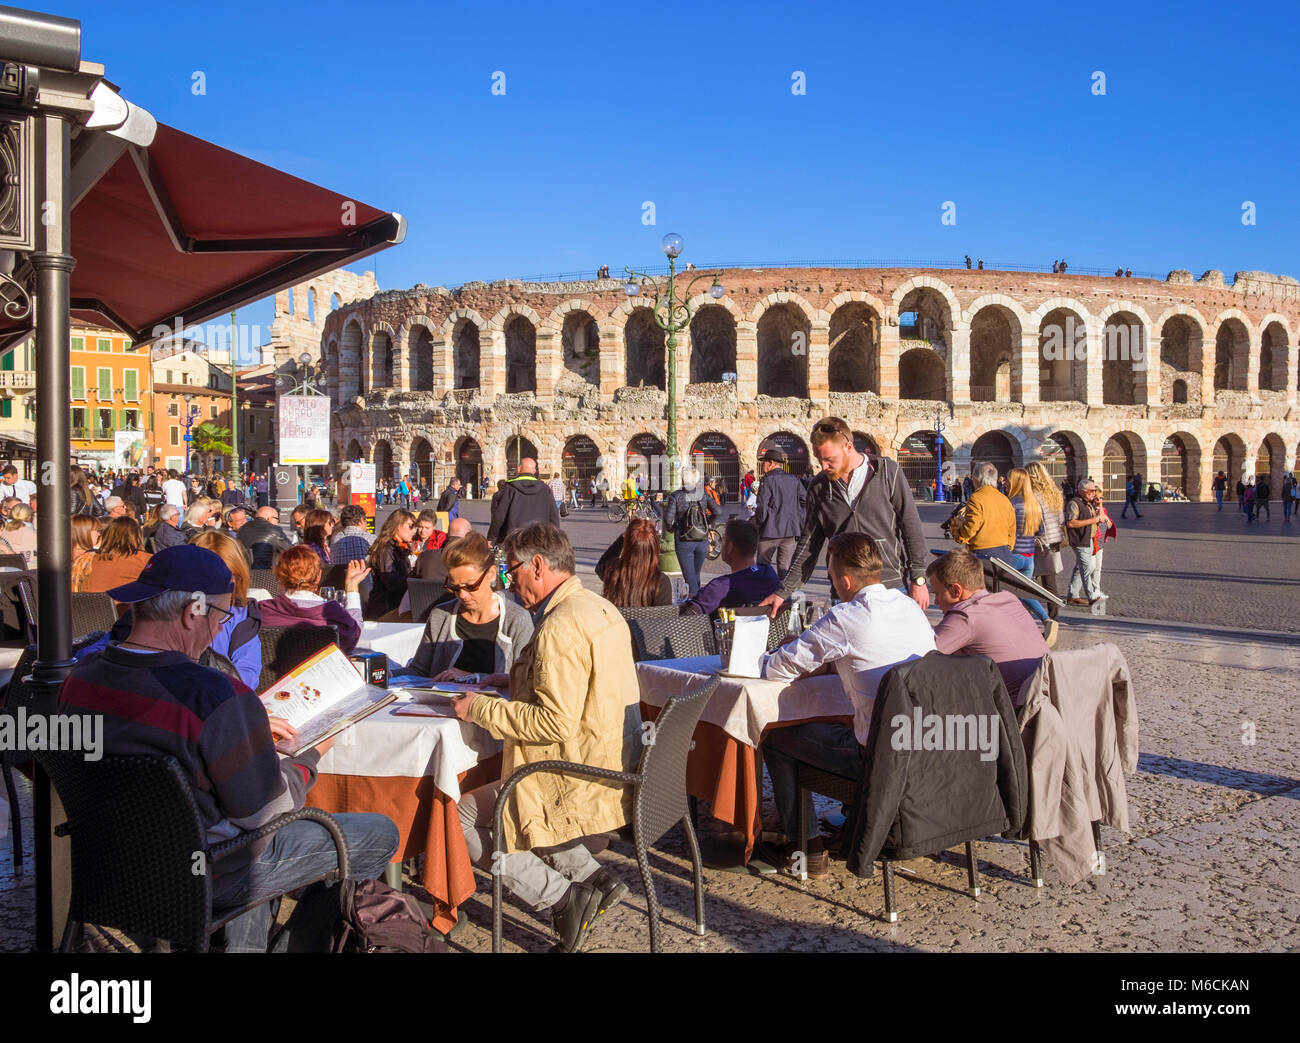 Verona, Italien - Piazza Bra, Anzeigen der römischen Arena und die Leute im Restaurant Cafes sitzen Stockfoto